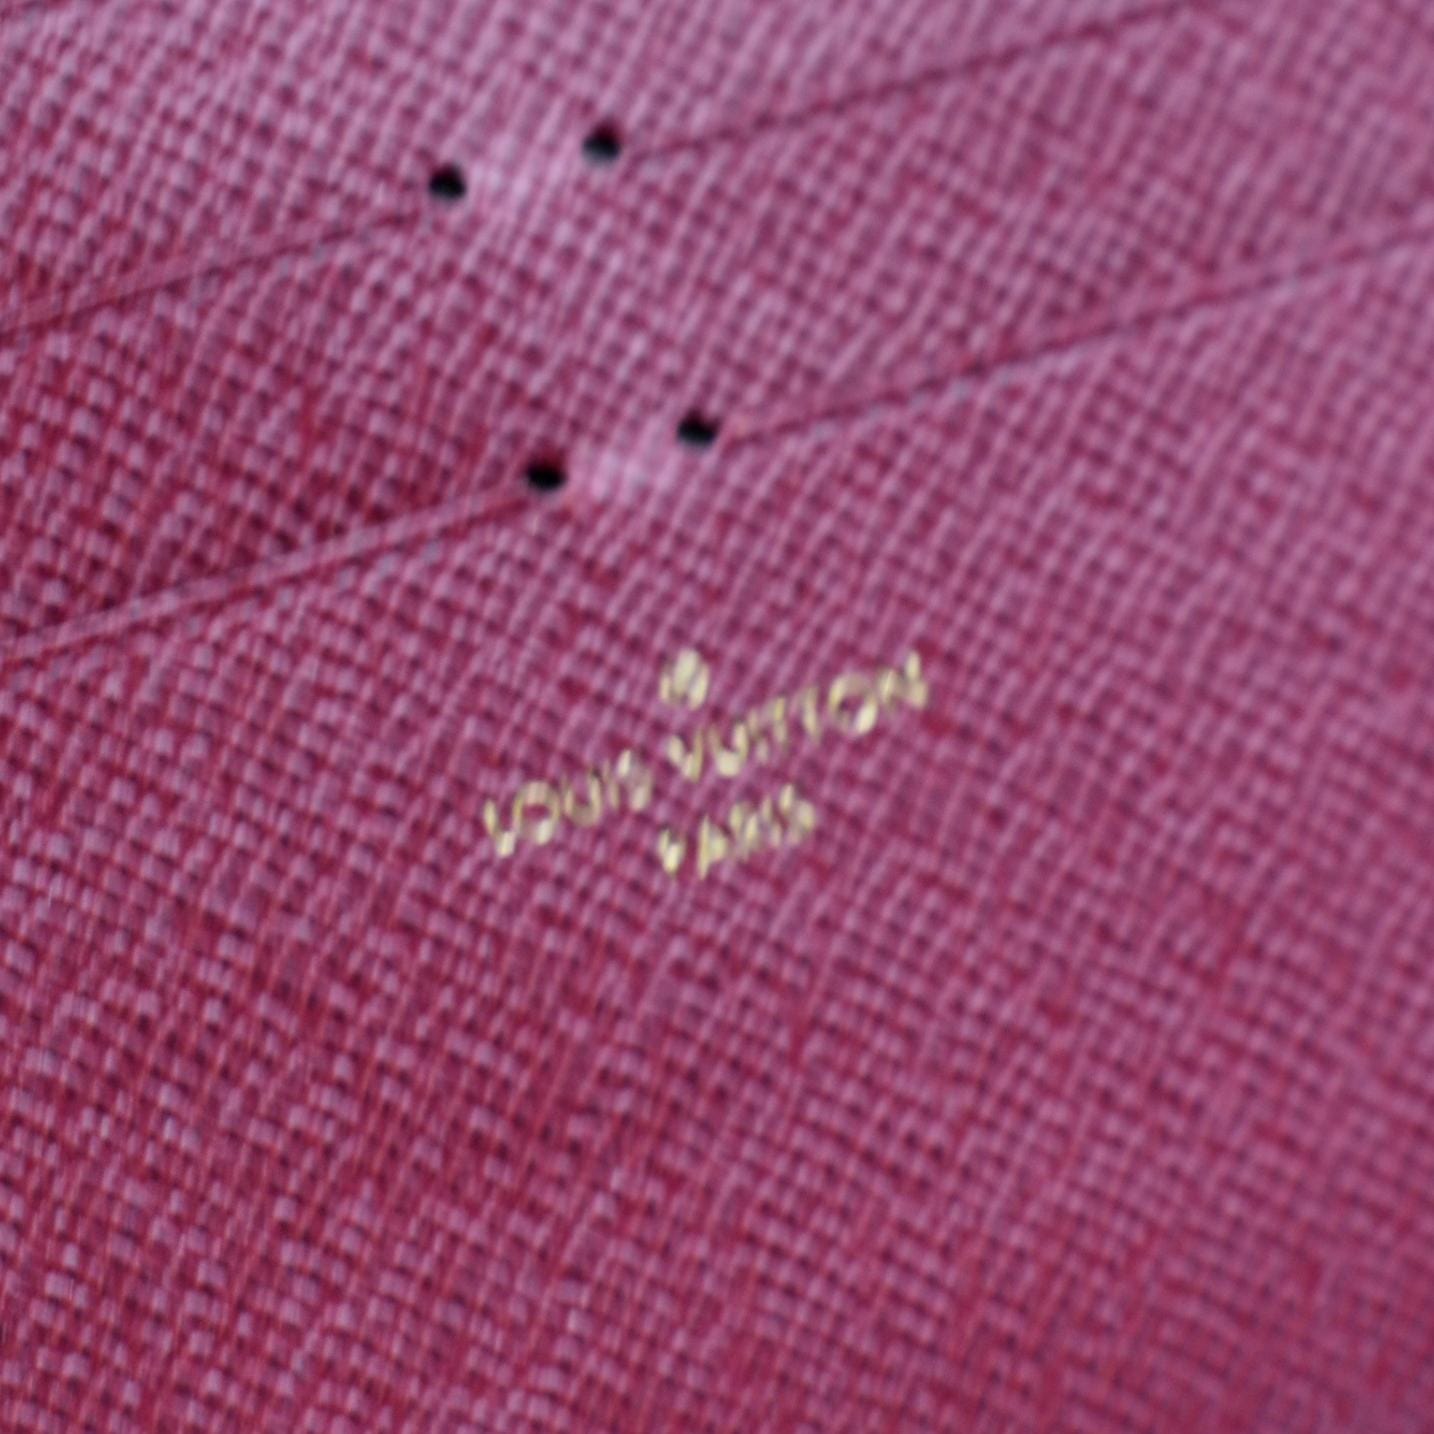 Louis Vuitton Pochette Felicie Card Holder Insert Pink in Calfskin - US